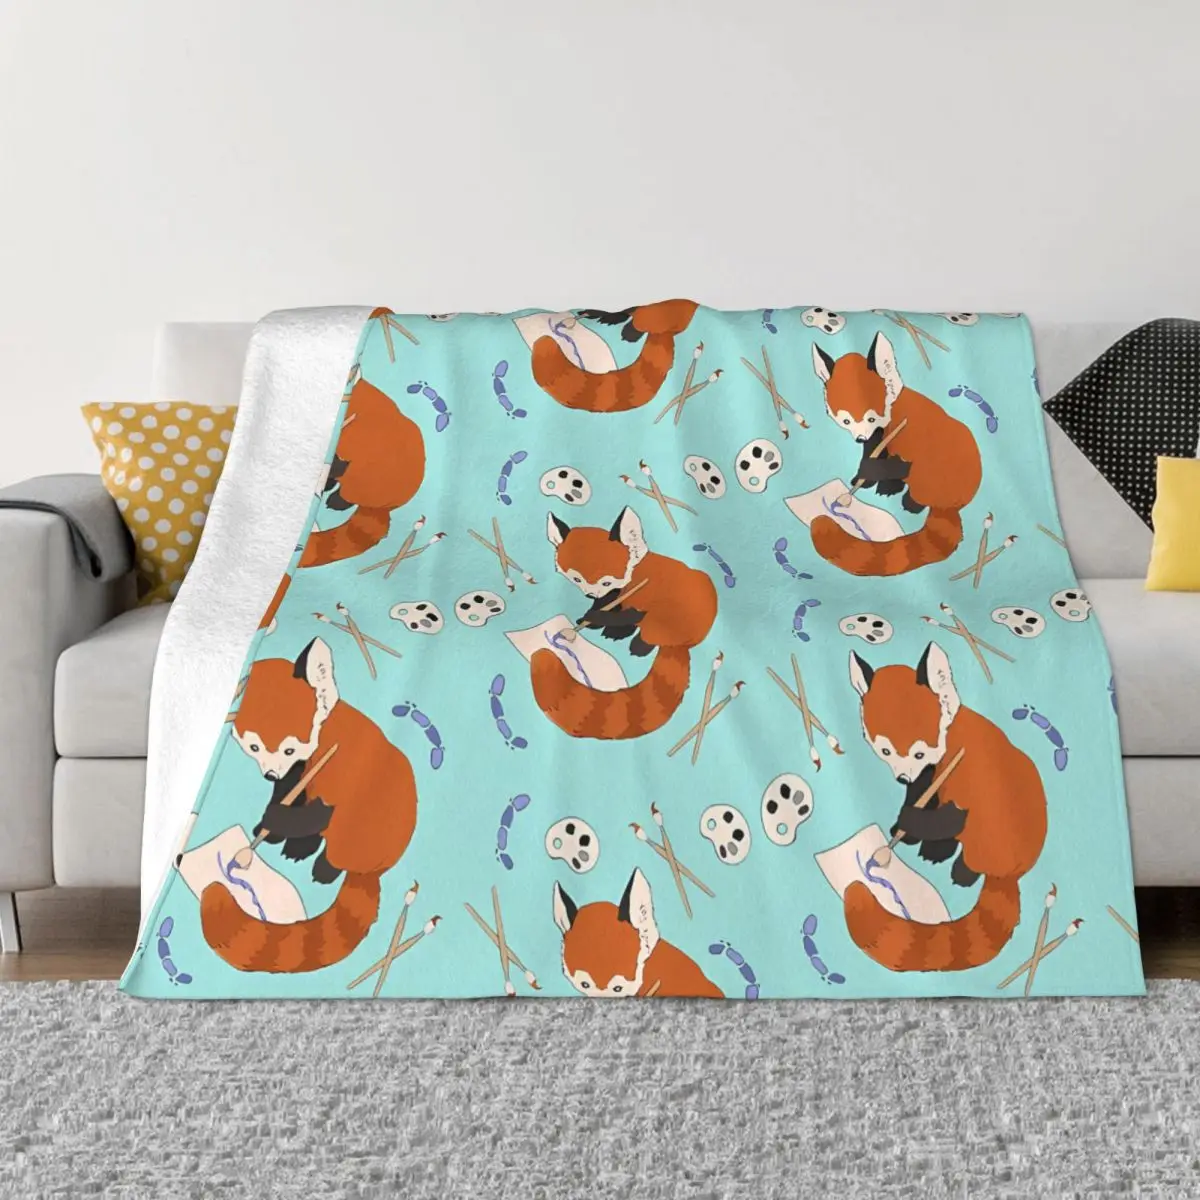 

Переносные теплые одеяла с рисунком енота Красной панды для постельных принадлежностей и путешествий